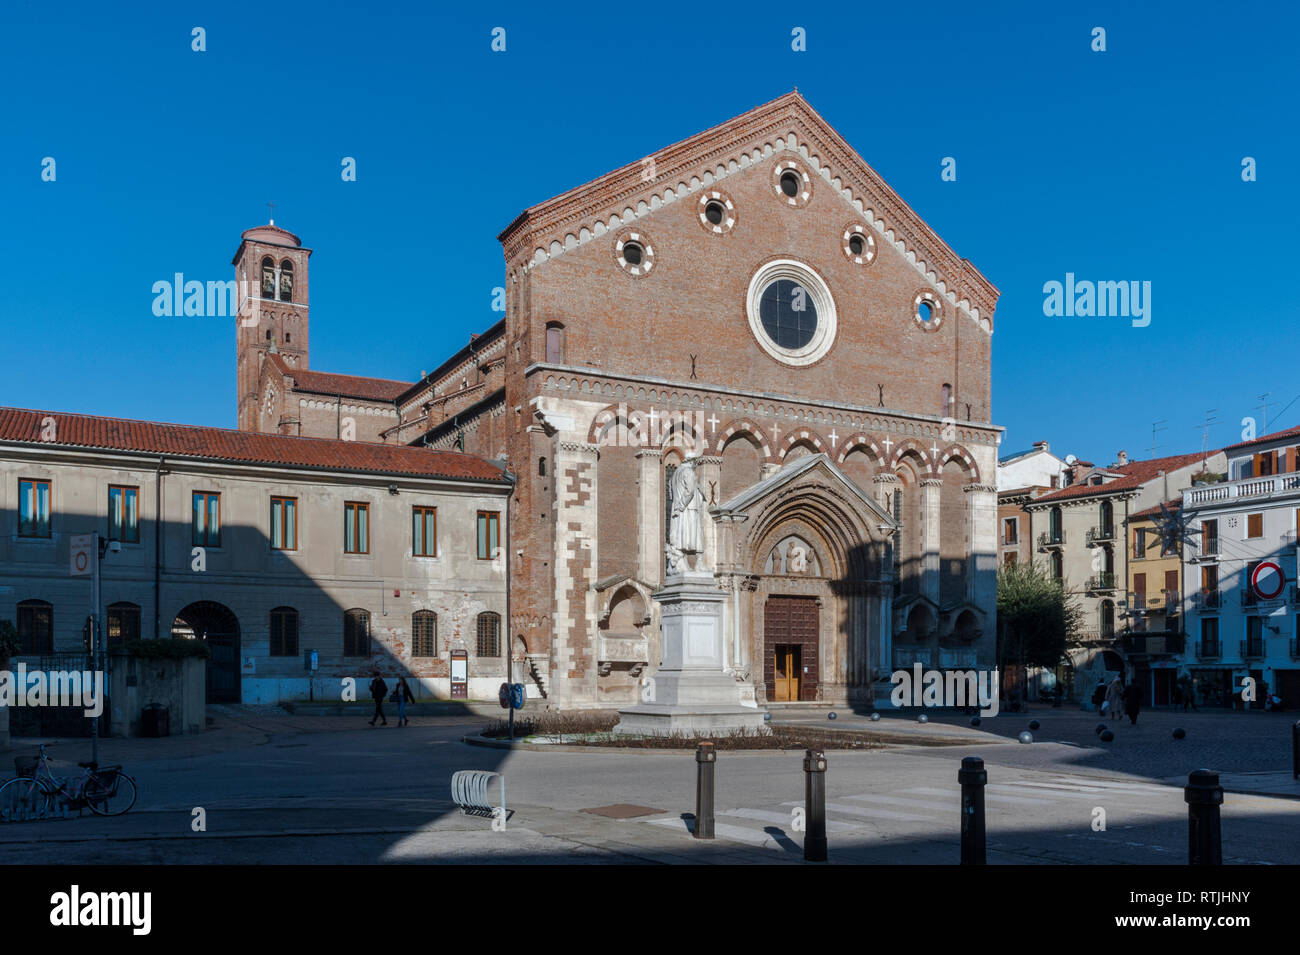 Chiesa di San Lorenzo, un cattolico del luogo di culto in Vicenza, costruita in stile gotico alla fine del XIII secolo - Vicenza, Italia Foto Stock